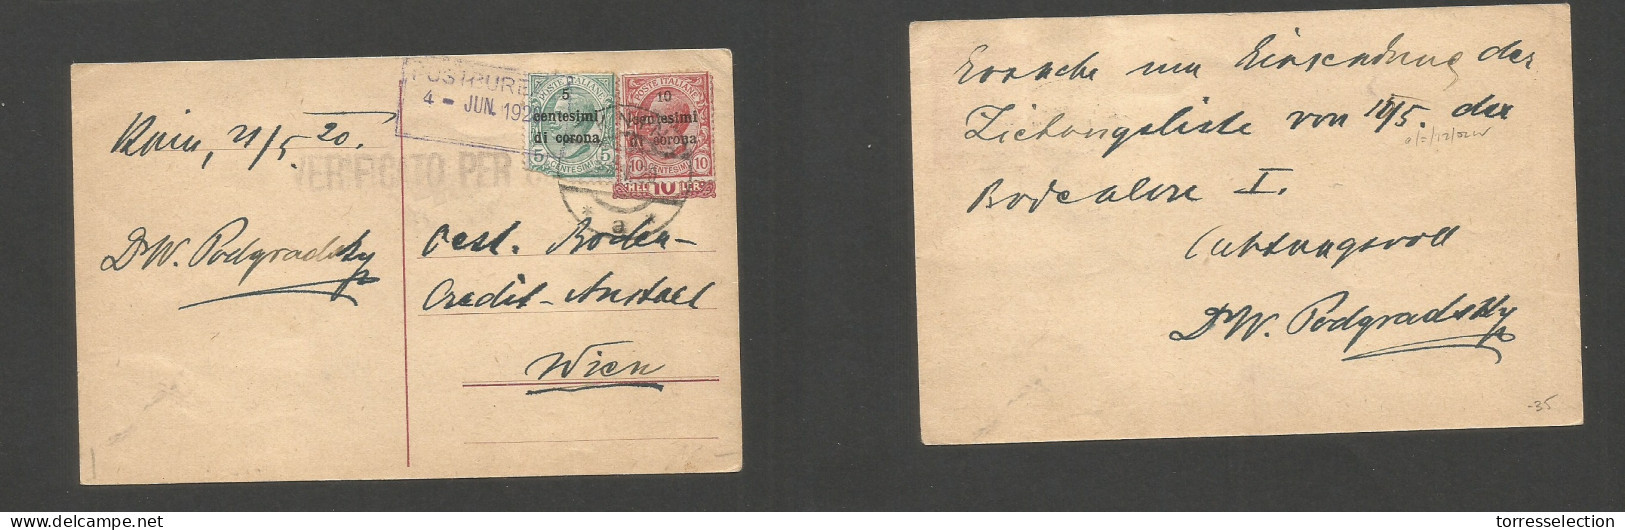 ITALY. 1920 (21 May) Venezia. Ovptd Issue. Knih - Austria, Wien. Censor Multifkd Ppc. Former Austria Stat Card. SALE. - Non Classificati